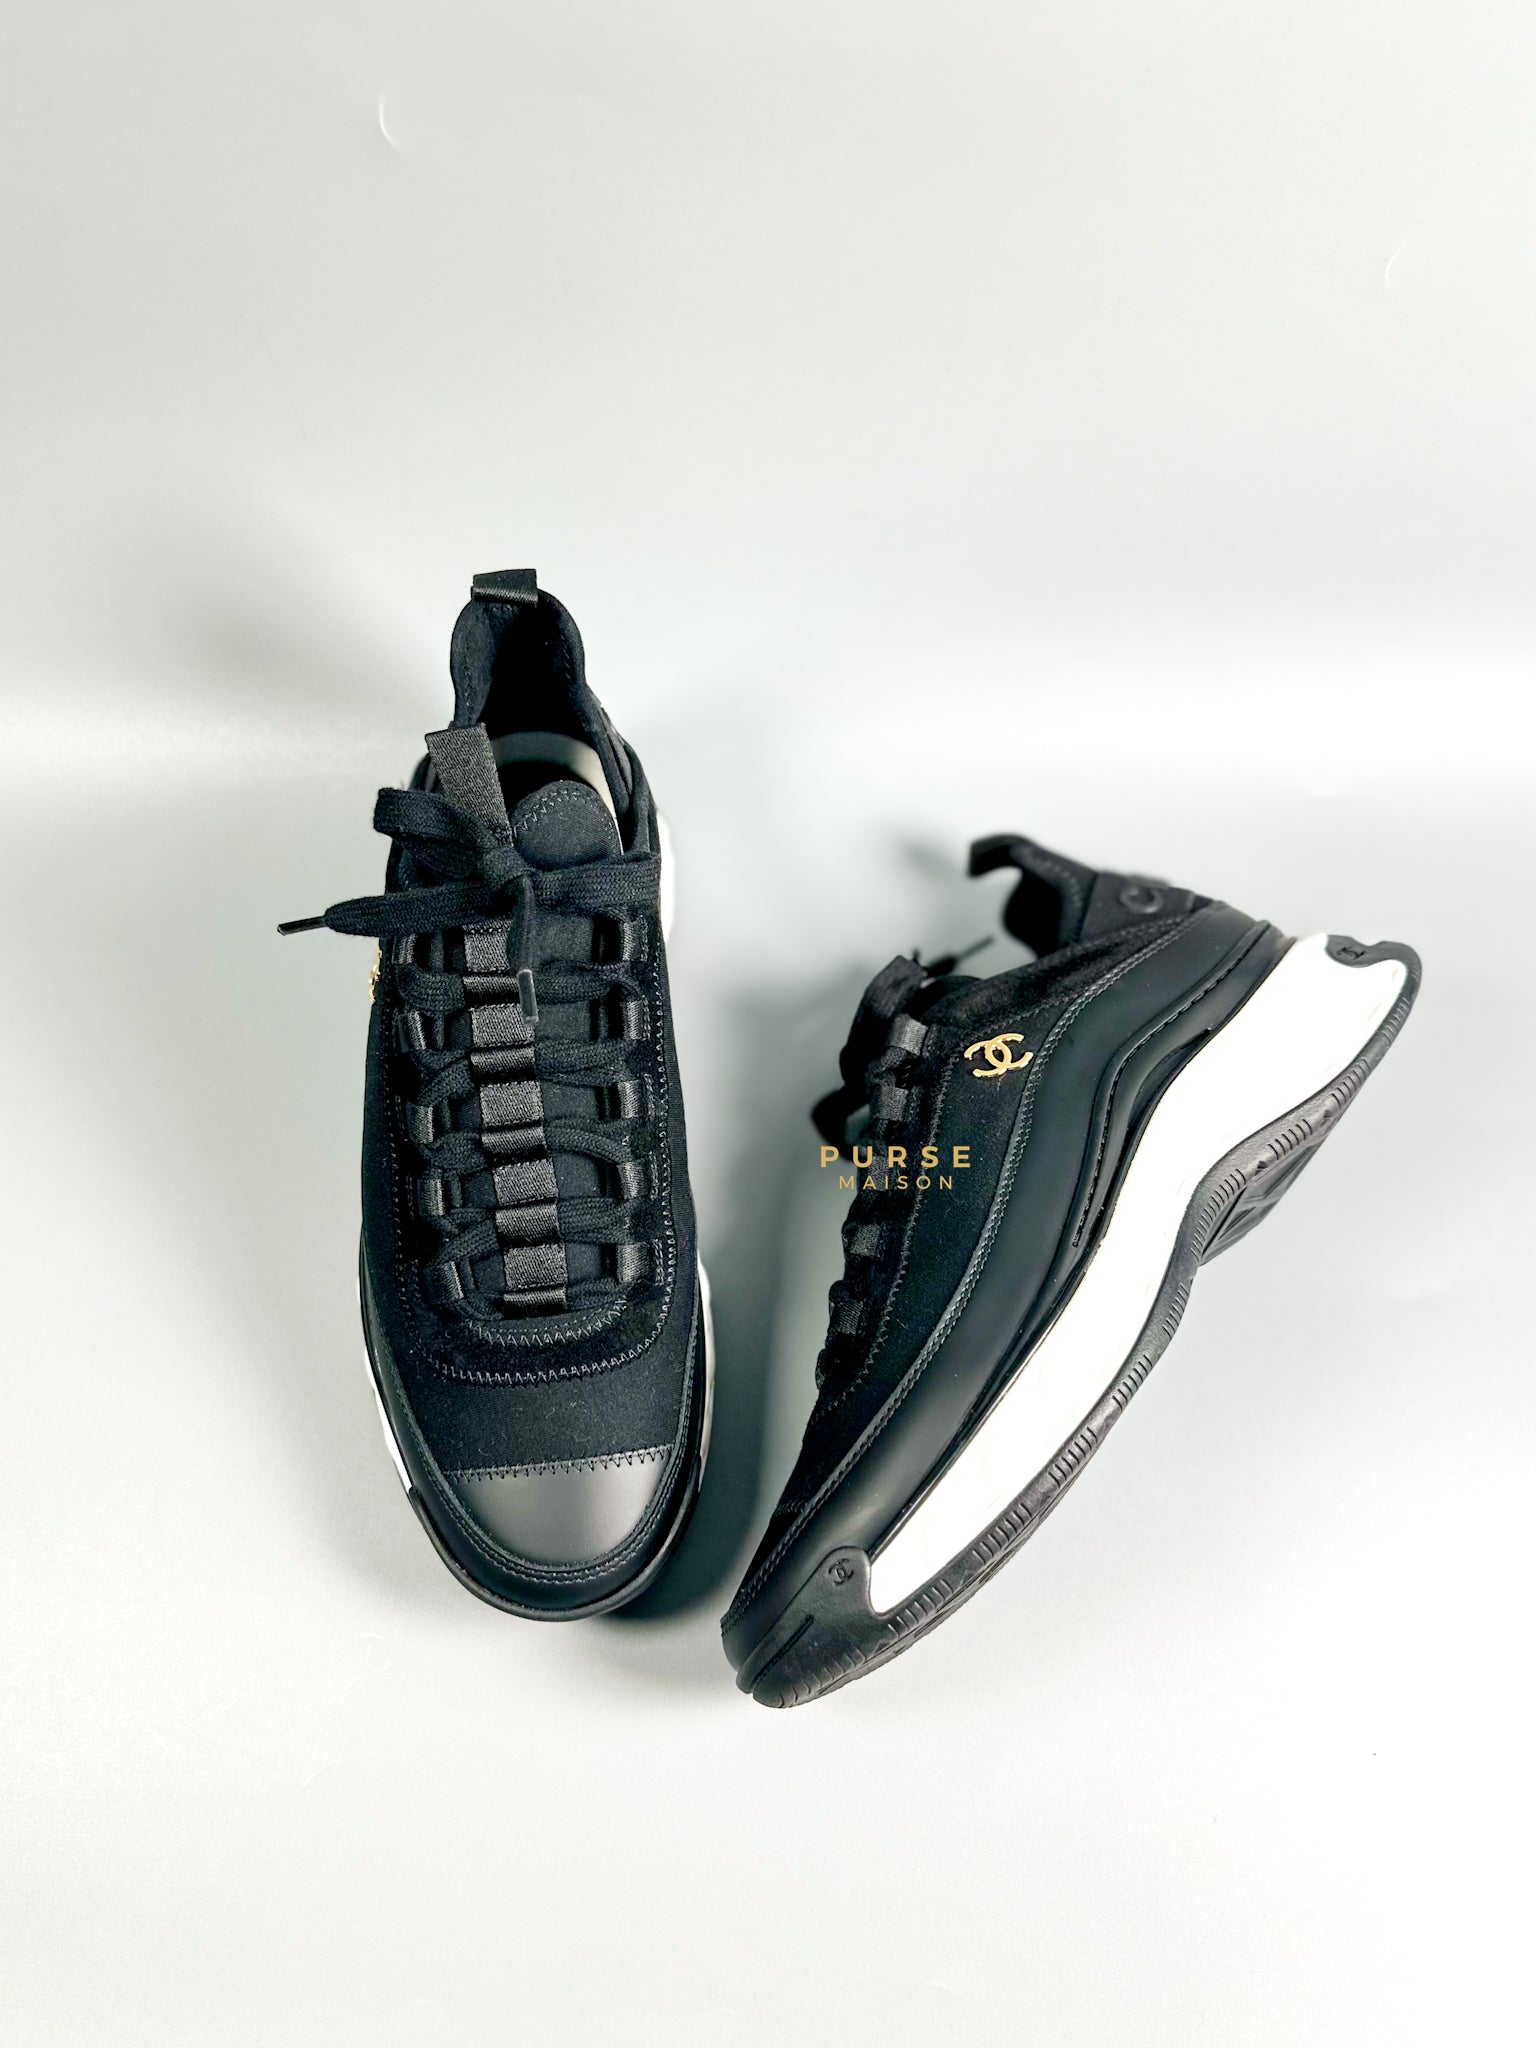 Lace Up Velvet Calfskin Mixed Fibers Sneakers Size 38.5 EU (25.5cm) | Purse Maison Luxury Bags Shop